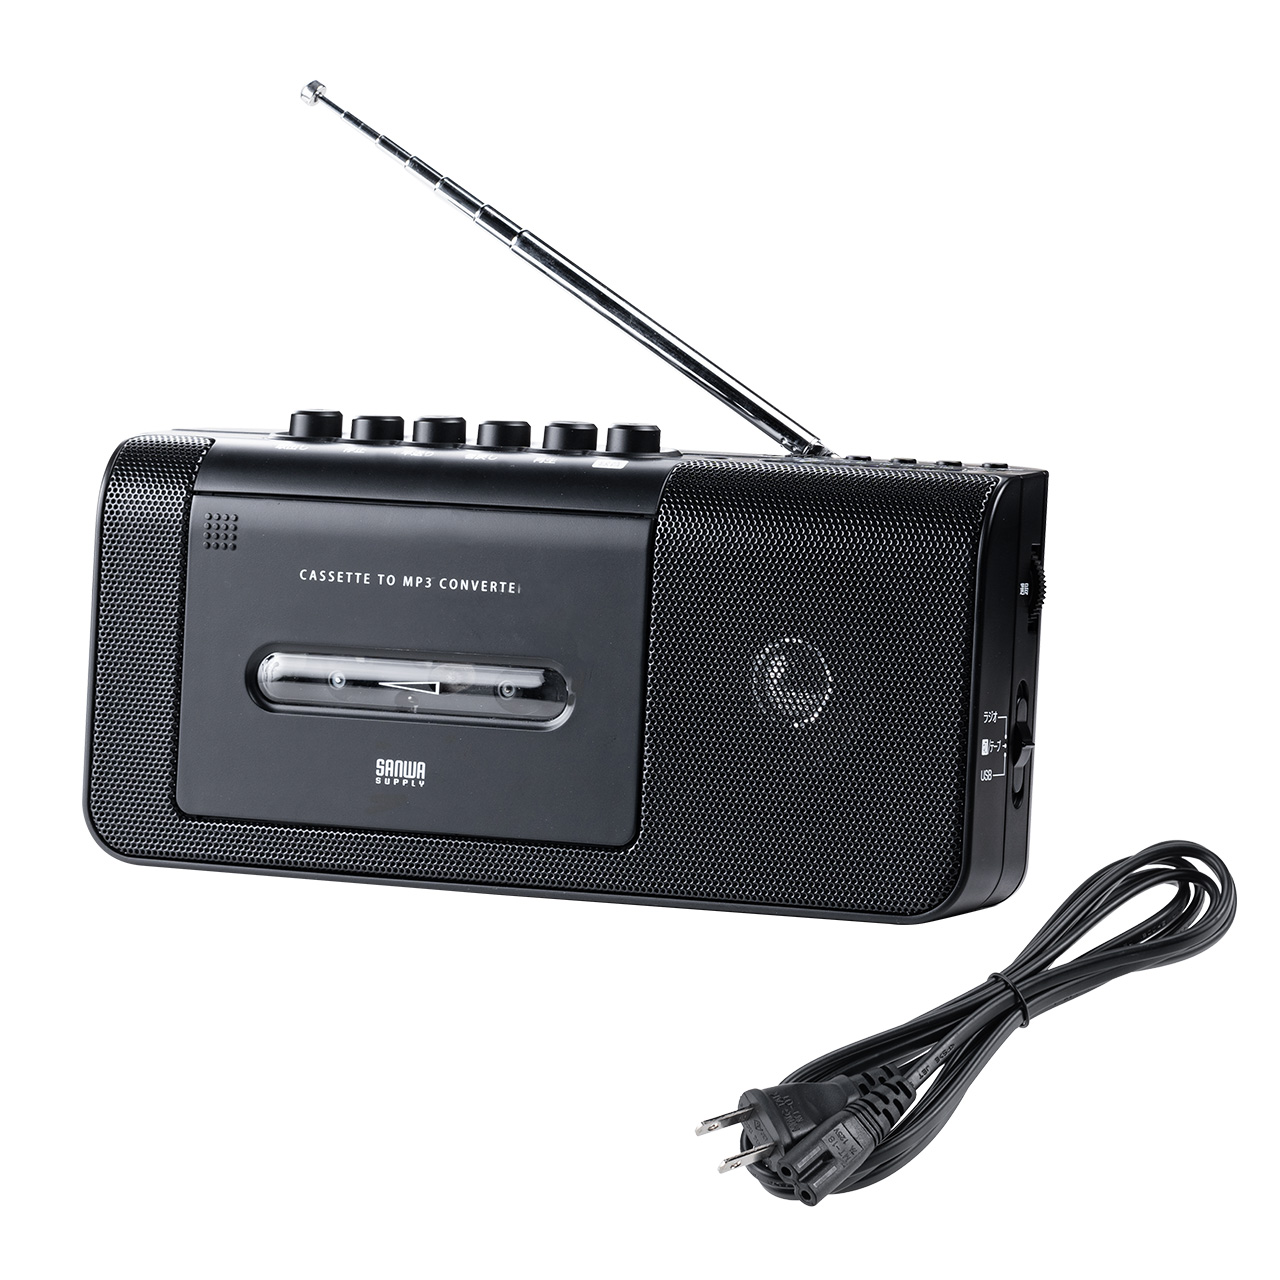 【ビジネス応援セール】カセット変換プレーヤー デジタル保存 AC電源 乾電池 USB保存 AM/FMラジオ機能 ラジカセ 400-MEDI043